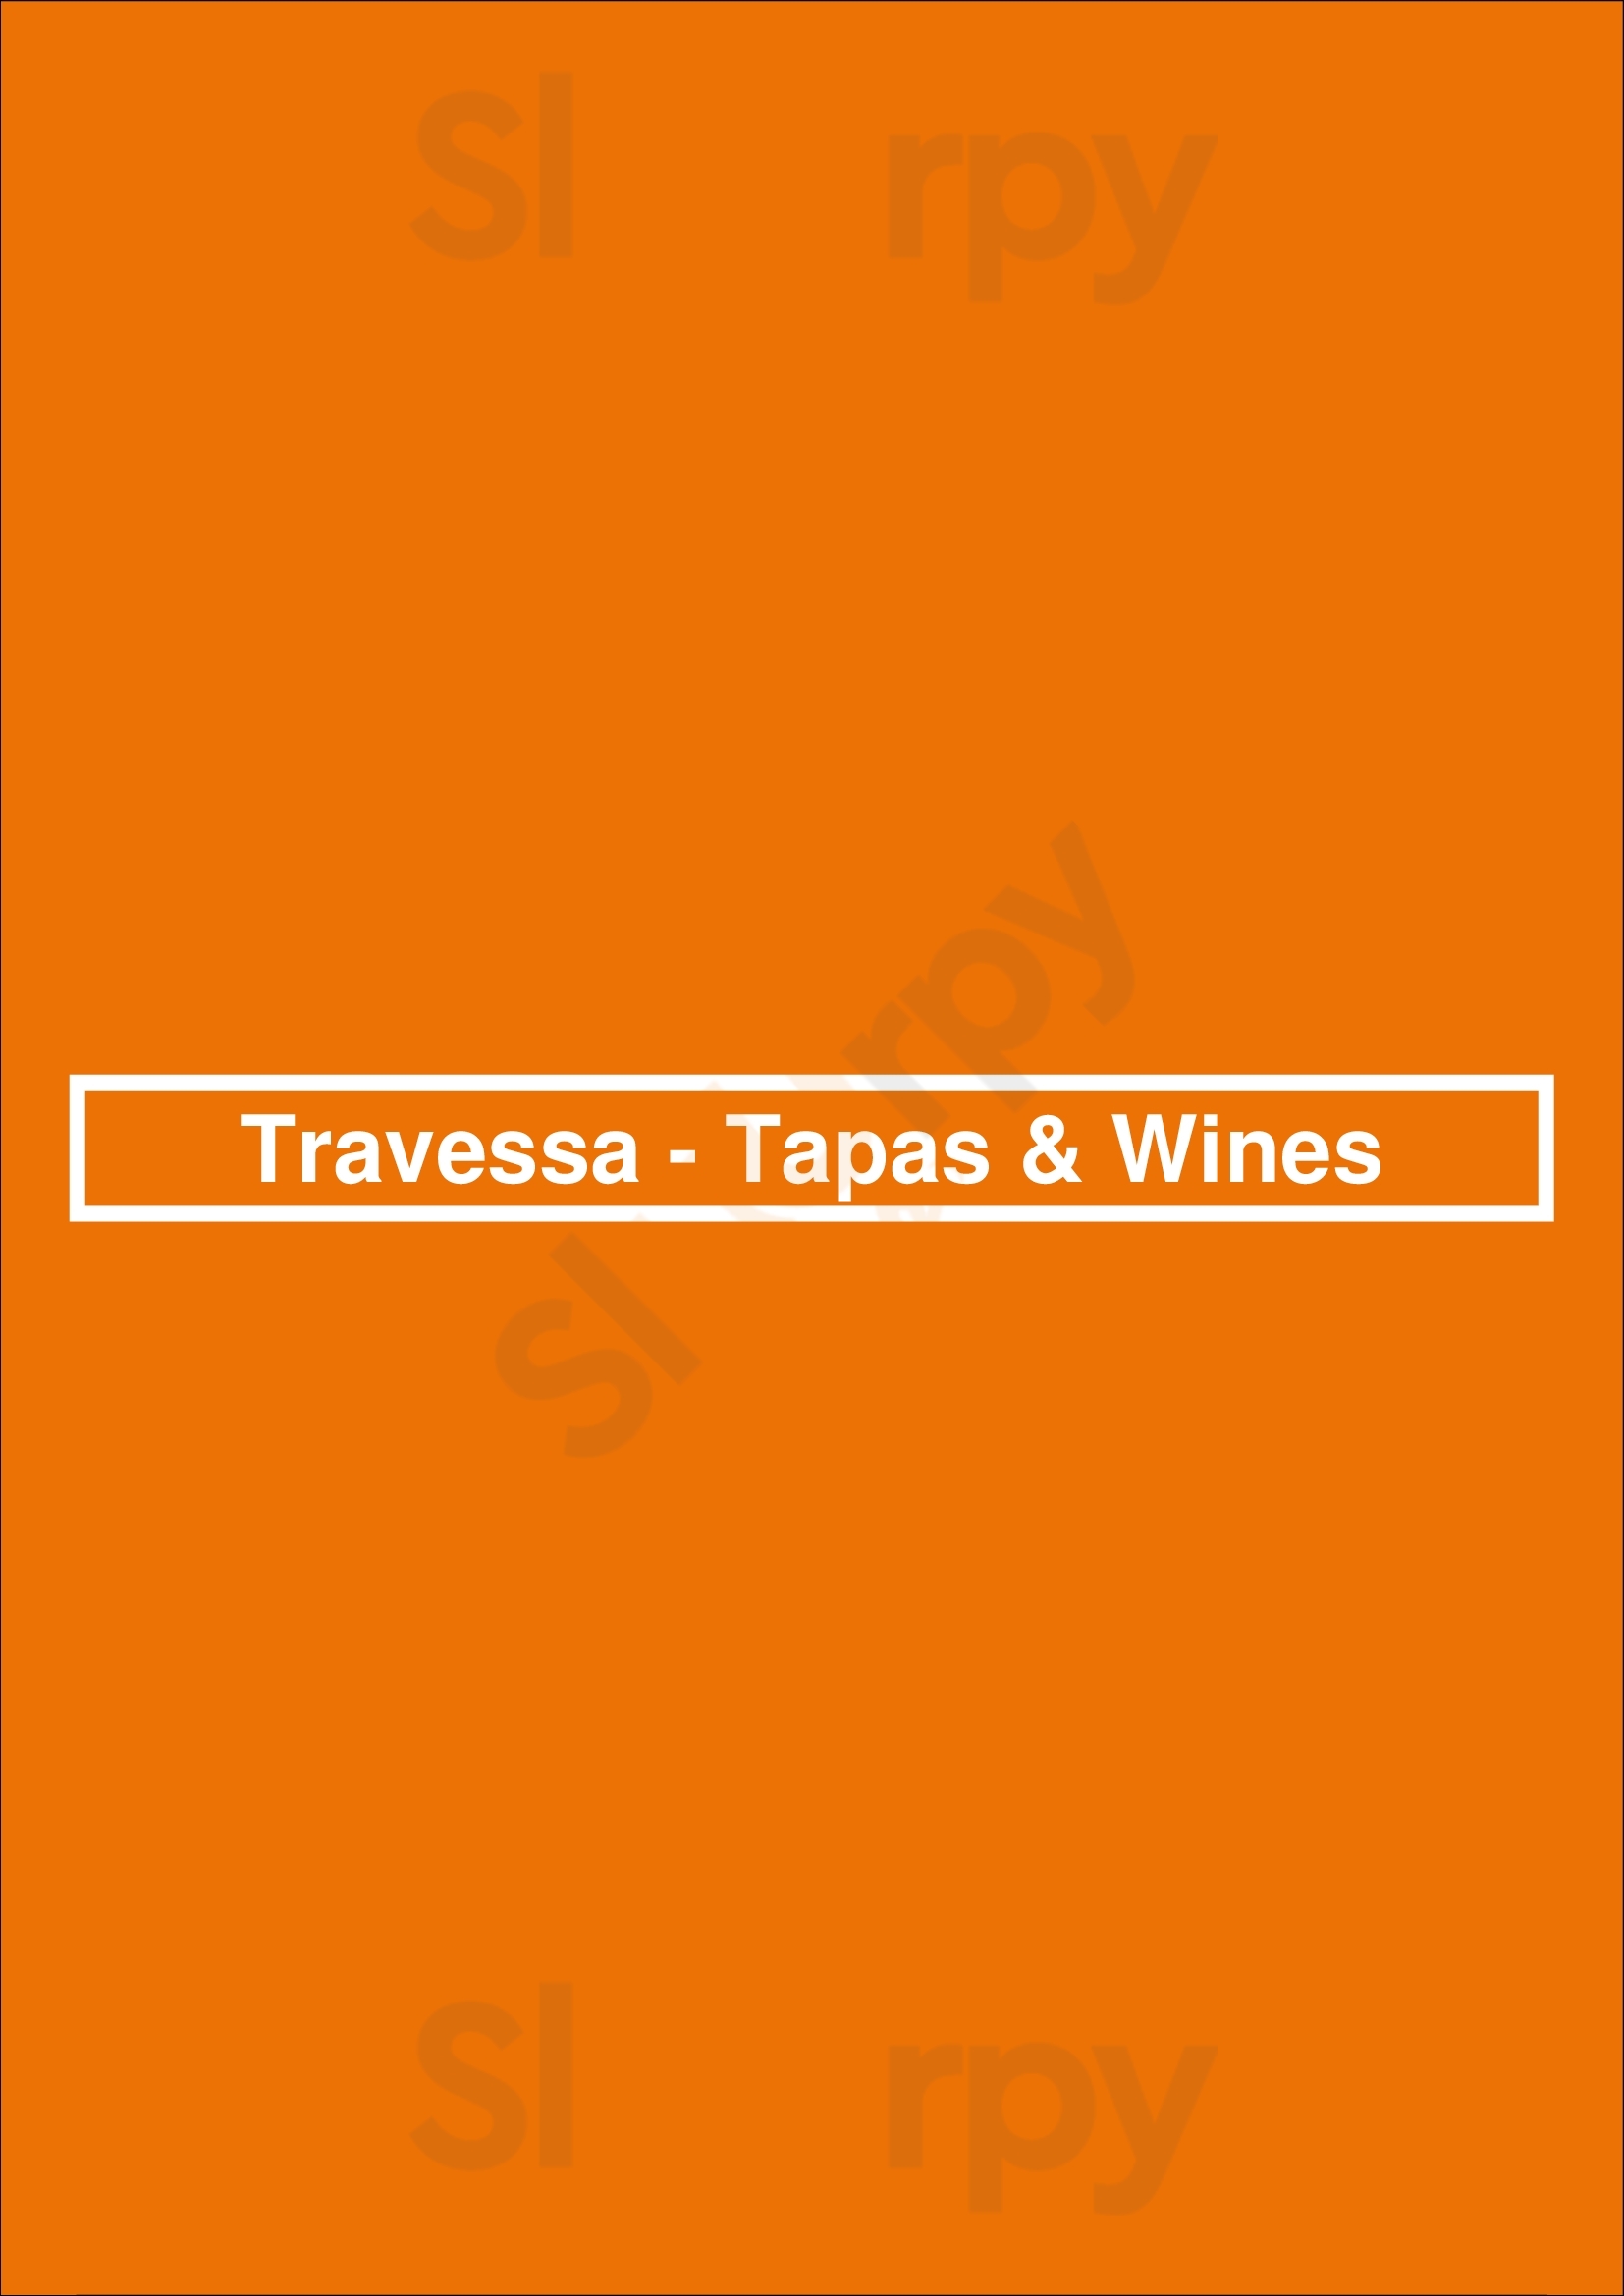 Travessa - Tapas & Wines Faro Menu - 1